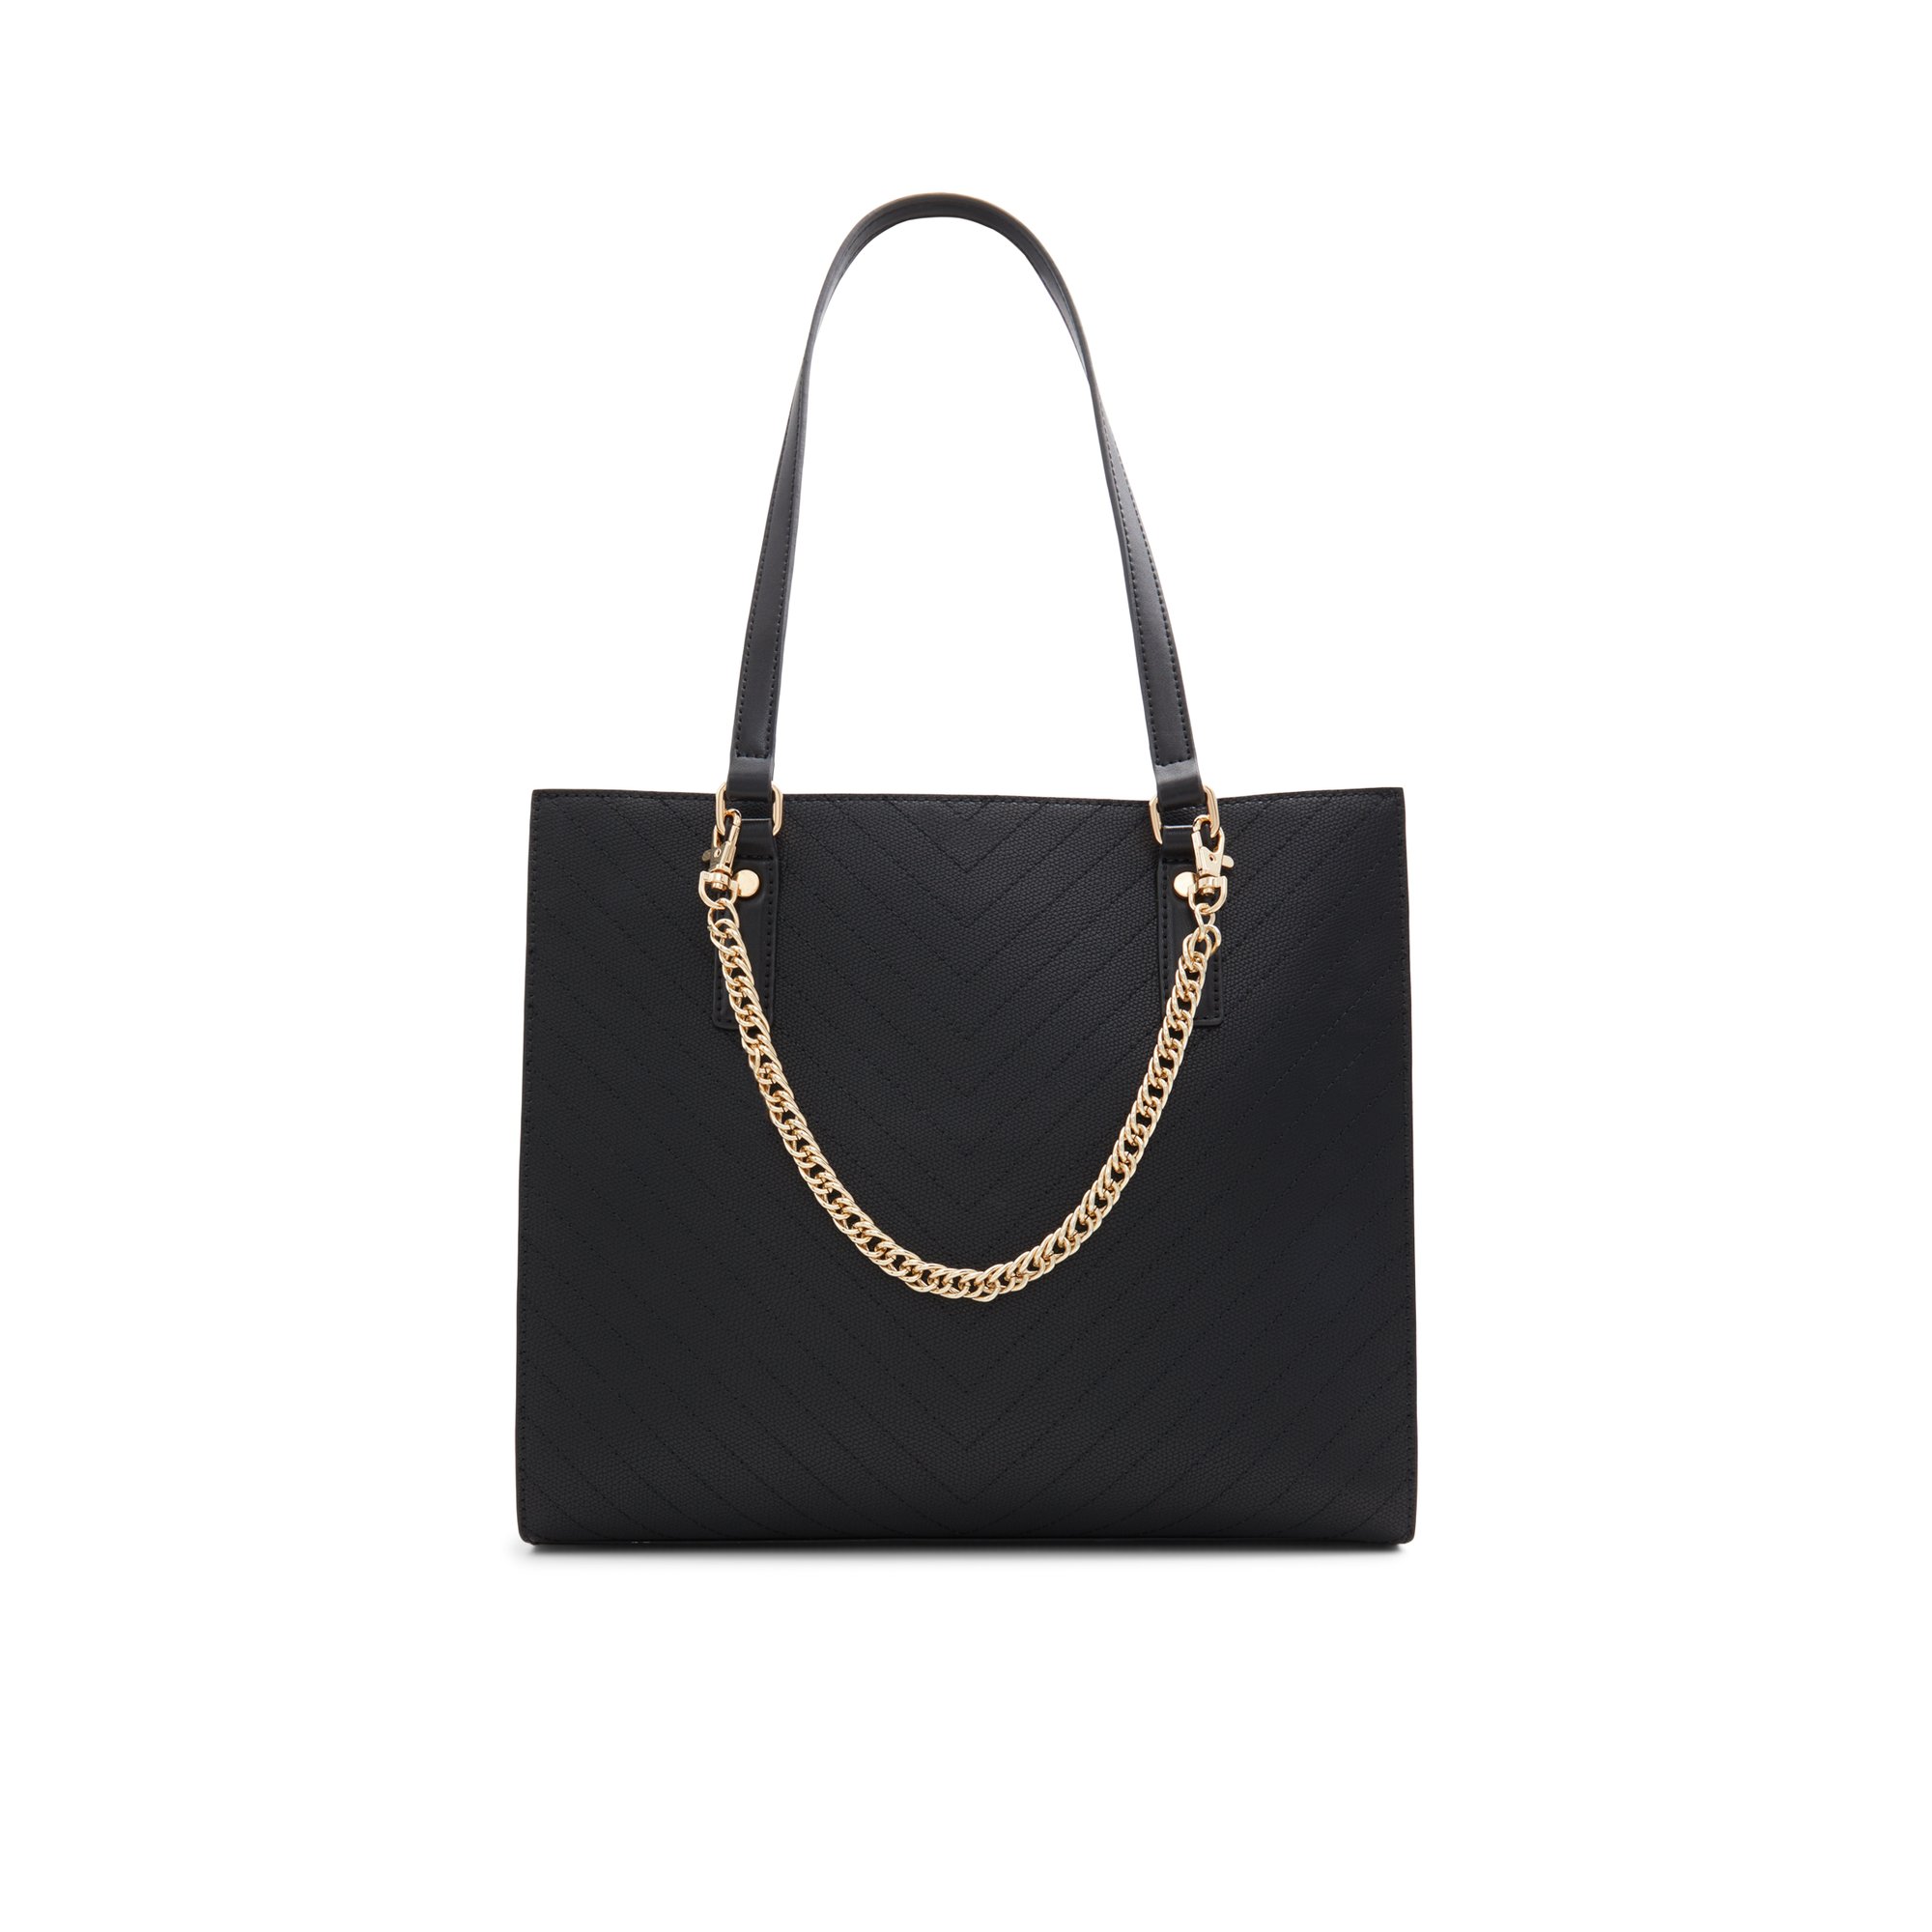 ALDO Zaveriix - Women's Handbags Totes - Black